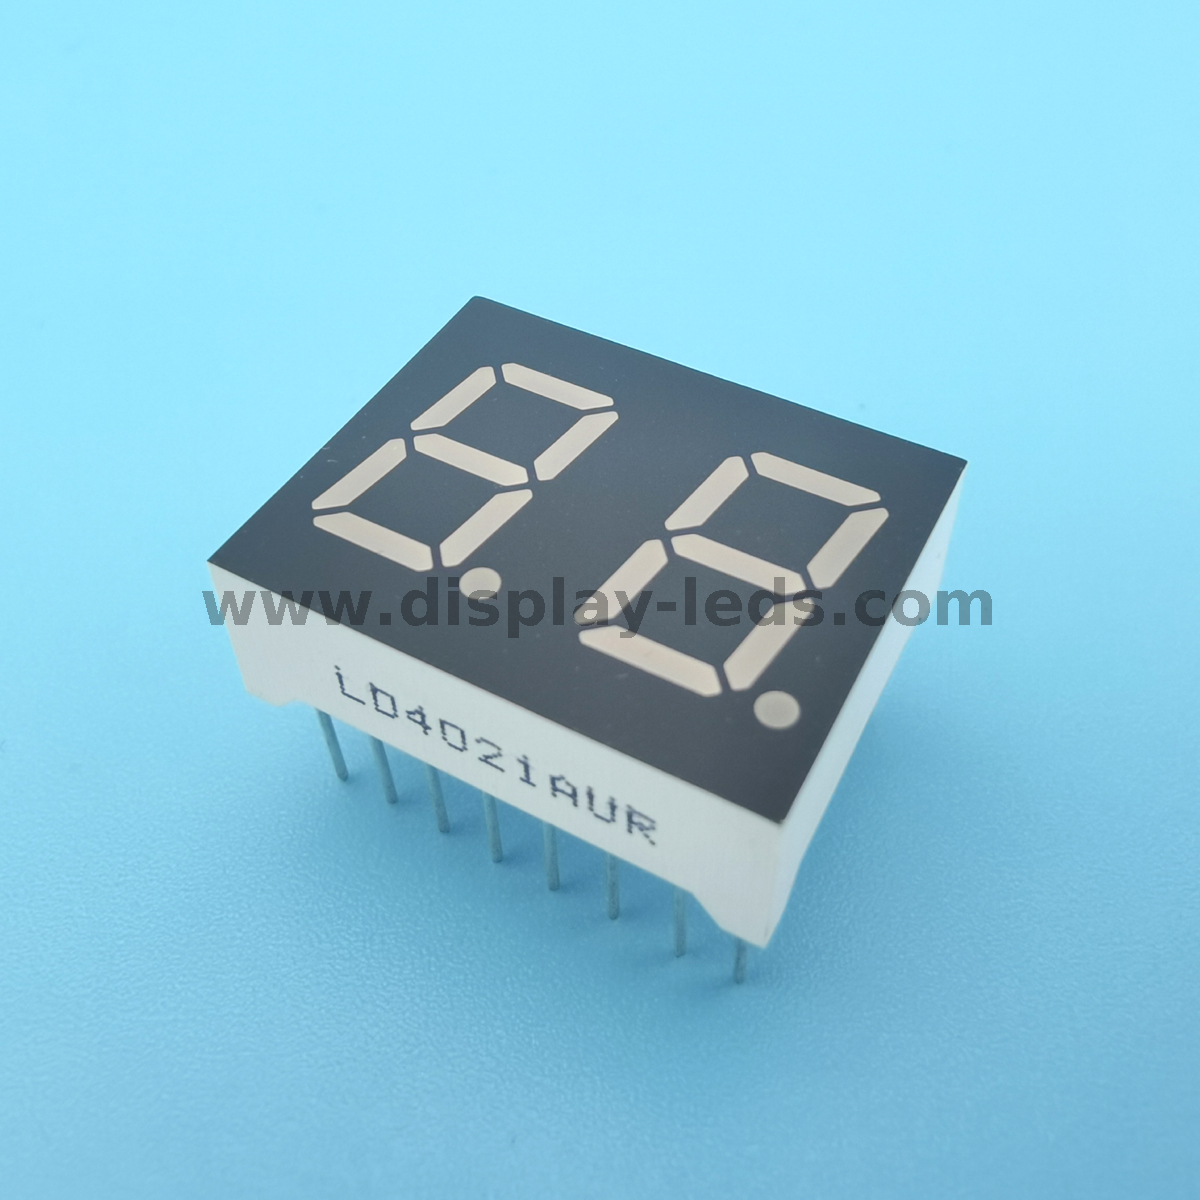 Serie LD4322A / B: pantalla de 0,4 pulgadas, 2 dígitos y 7 segmentos con circuito multiplex